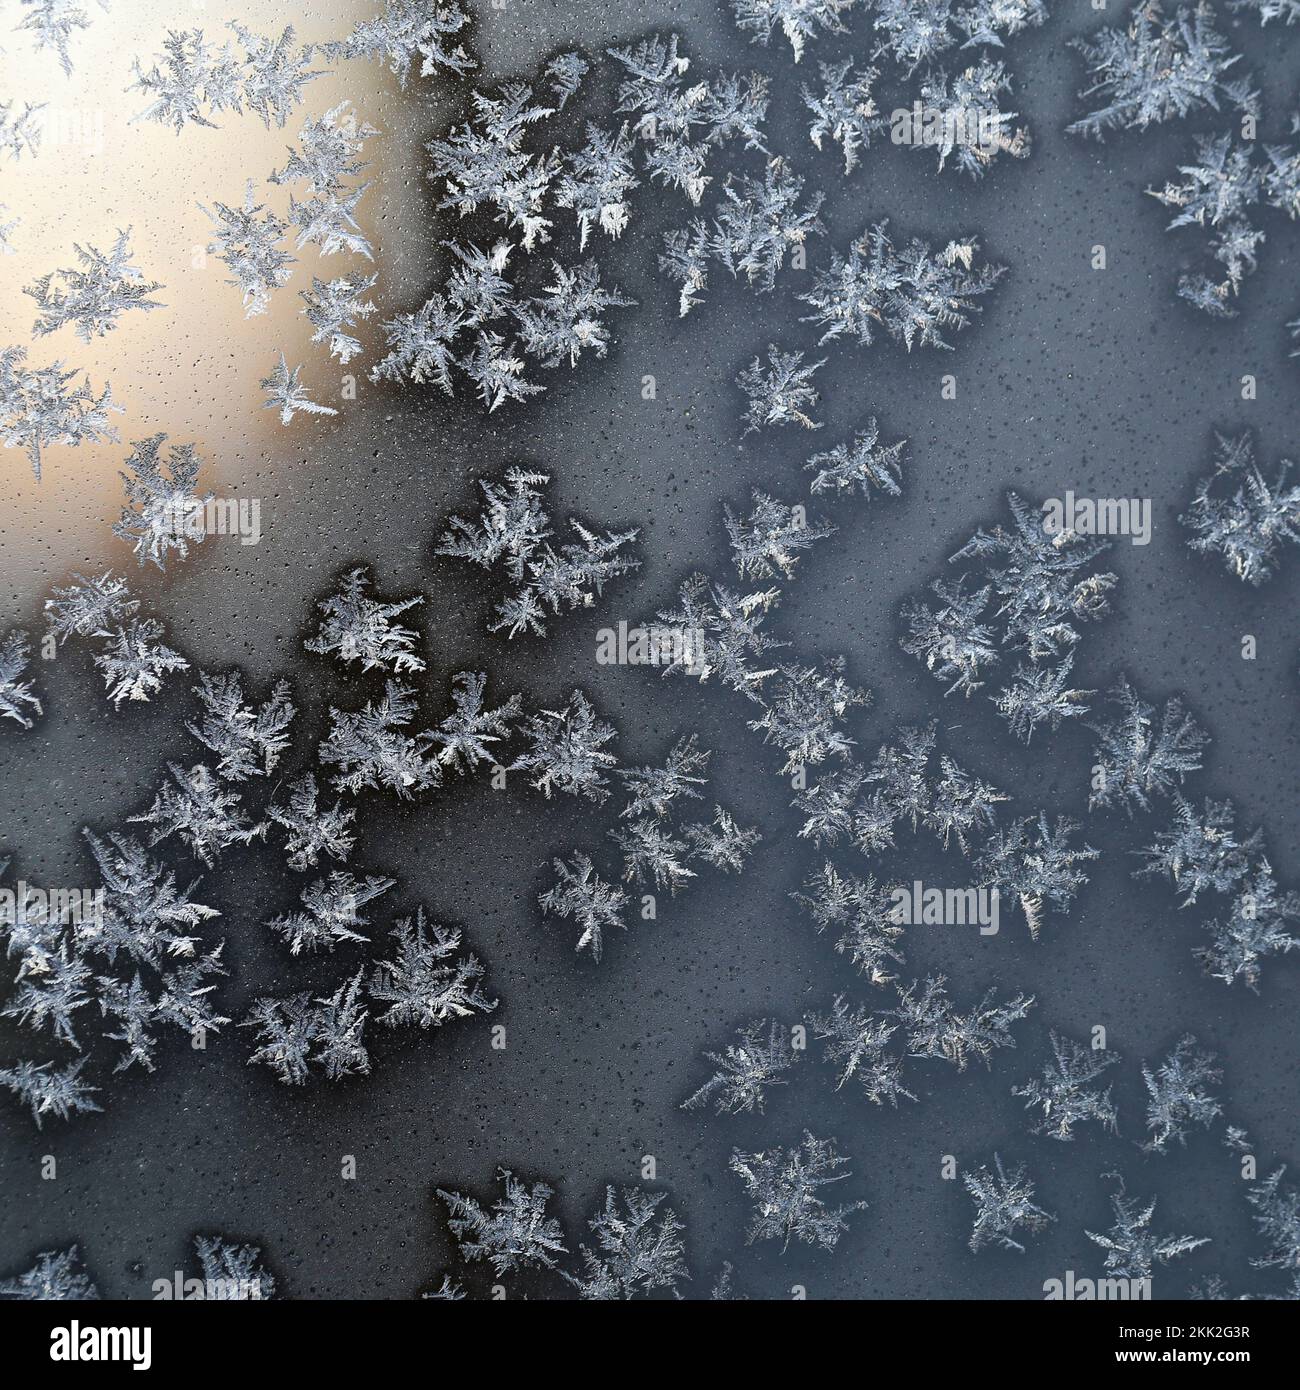 Cristaux de glace à la surface d'un verre congelé pendant une journée d'hiver froide autour de Noël en Finlande. Belle image de texture de gros plan de la saison des fêtes. Banque D'Images